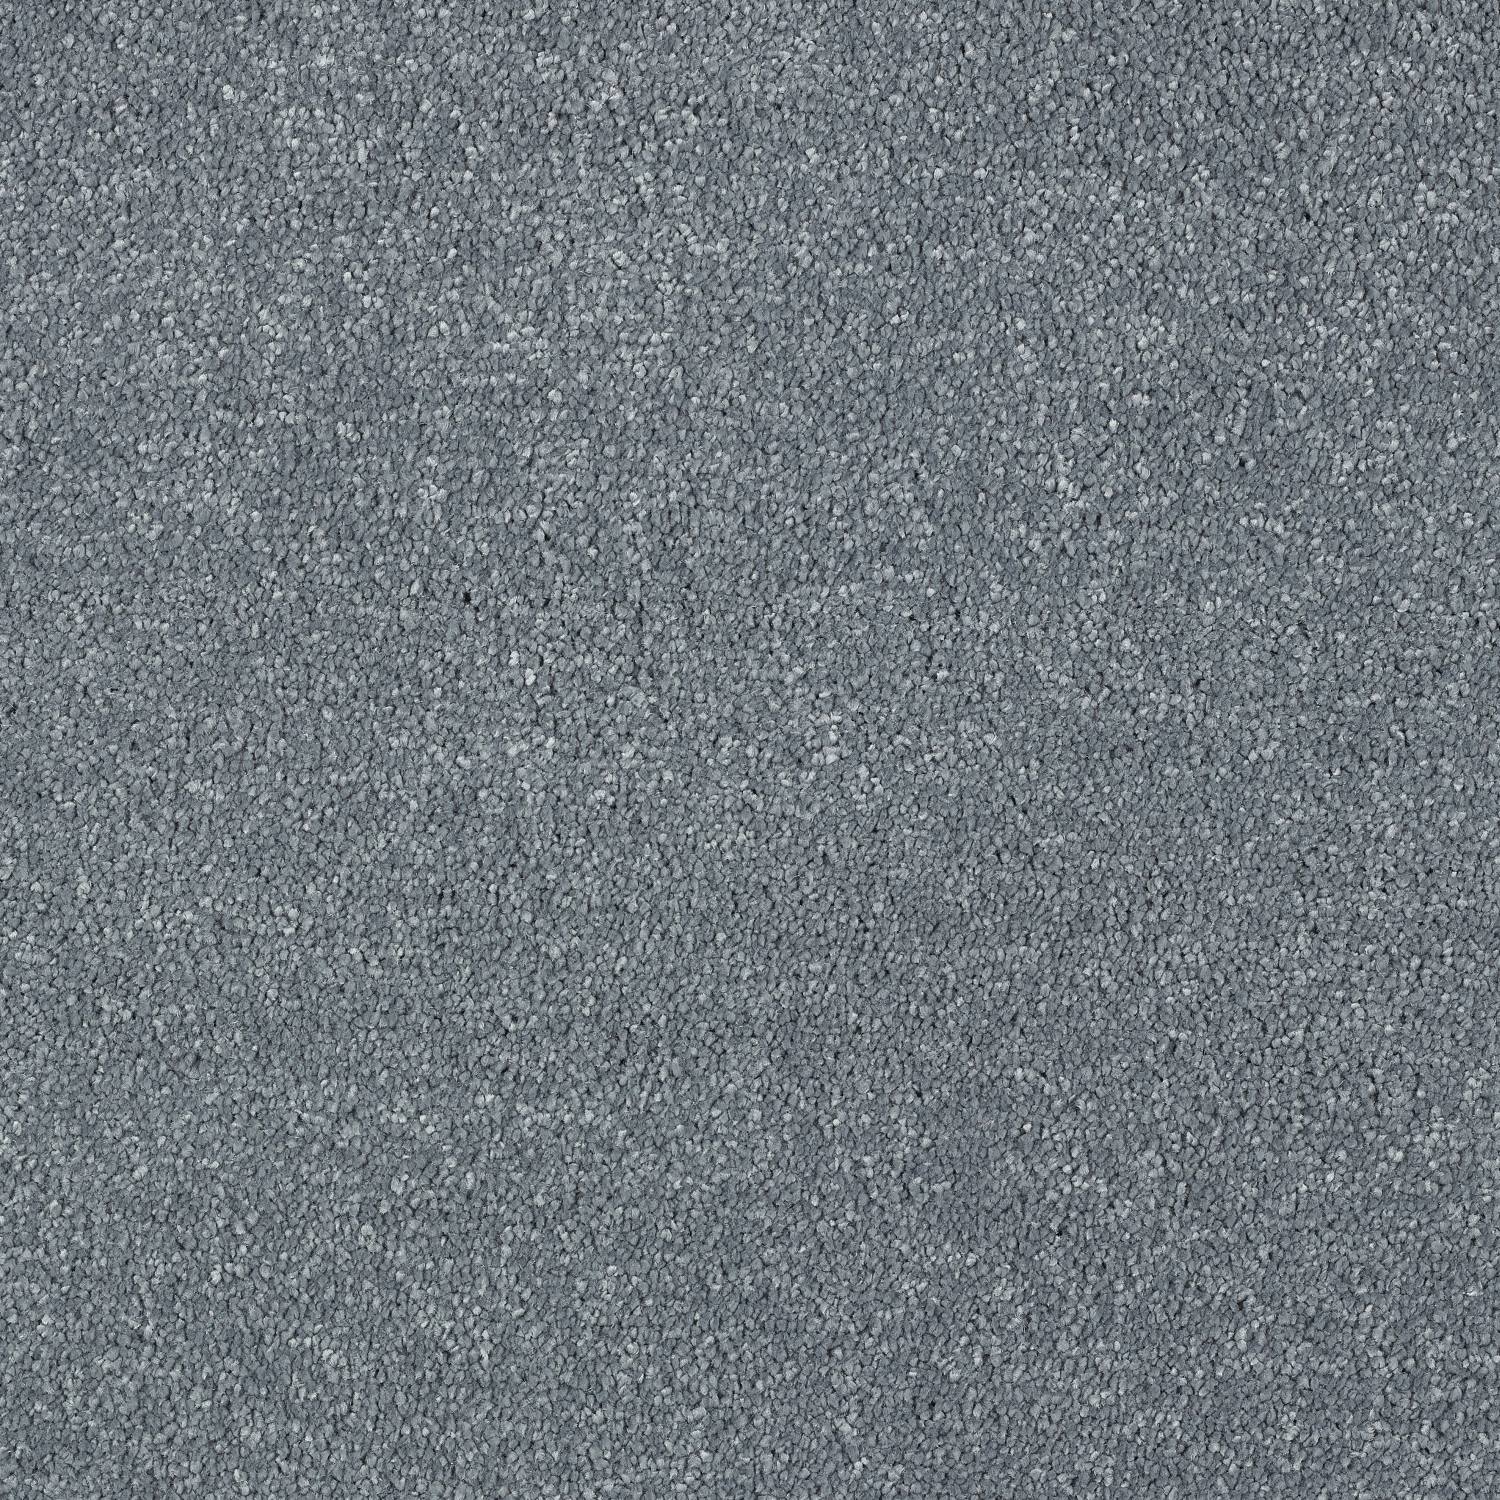 Stainfree Panache Twist Carpet - 19 Denim Blue